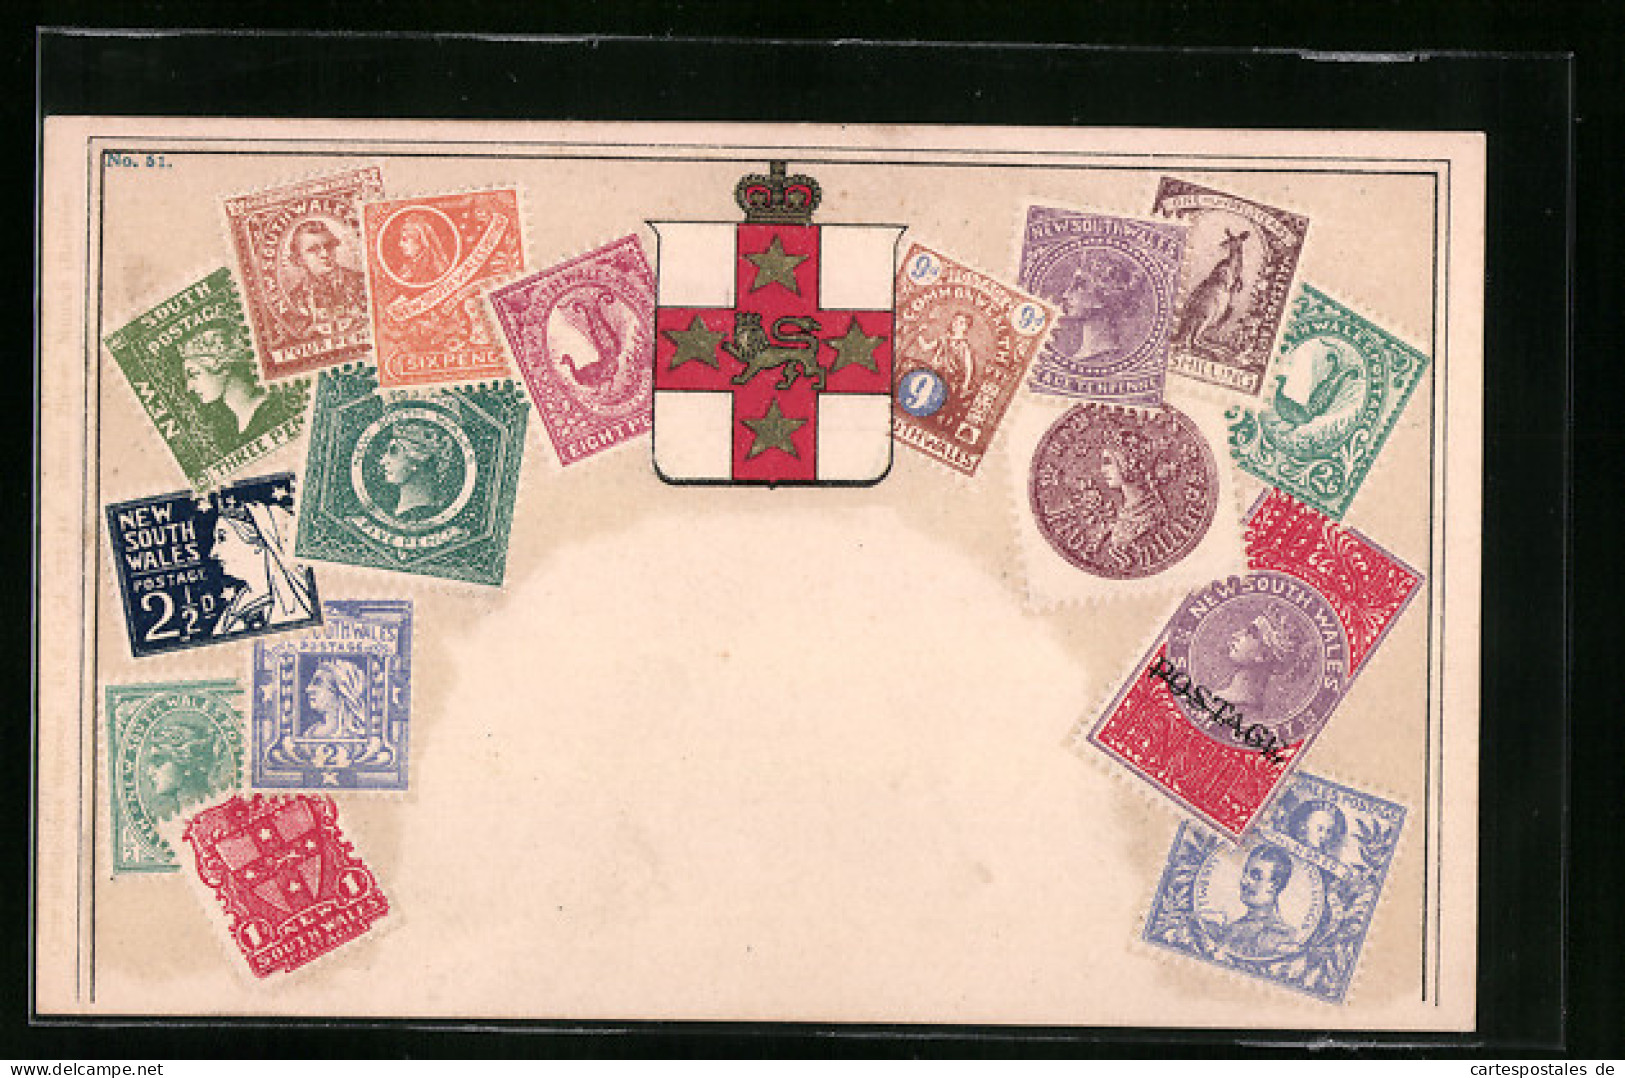 Präge-AK Briefmarken Mit Wappen Von New South Wales, Australien  - Briefmarken (Abbildungen)